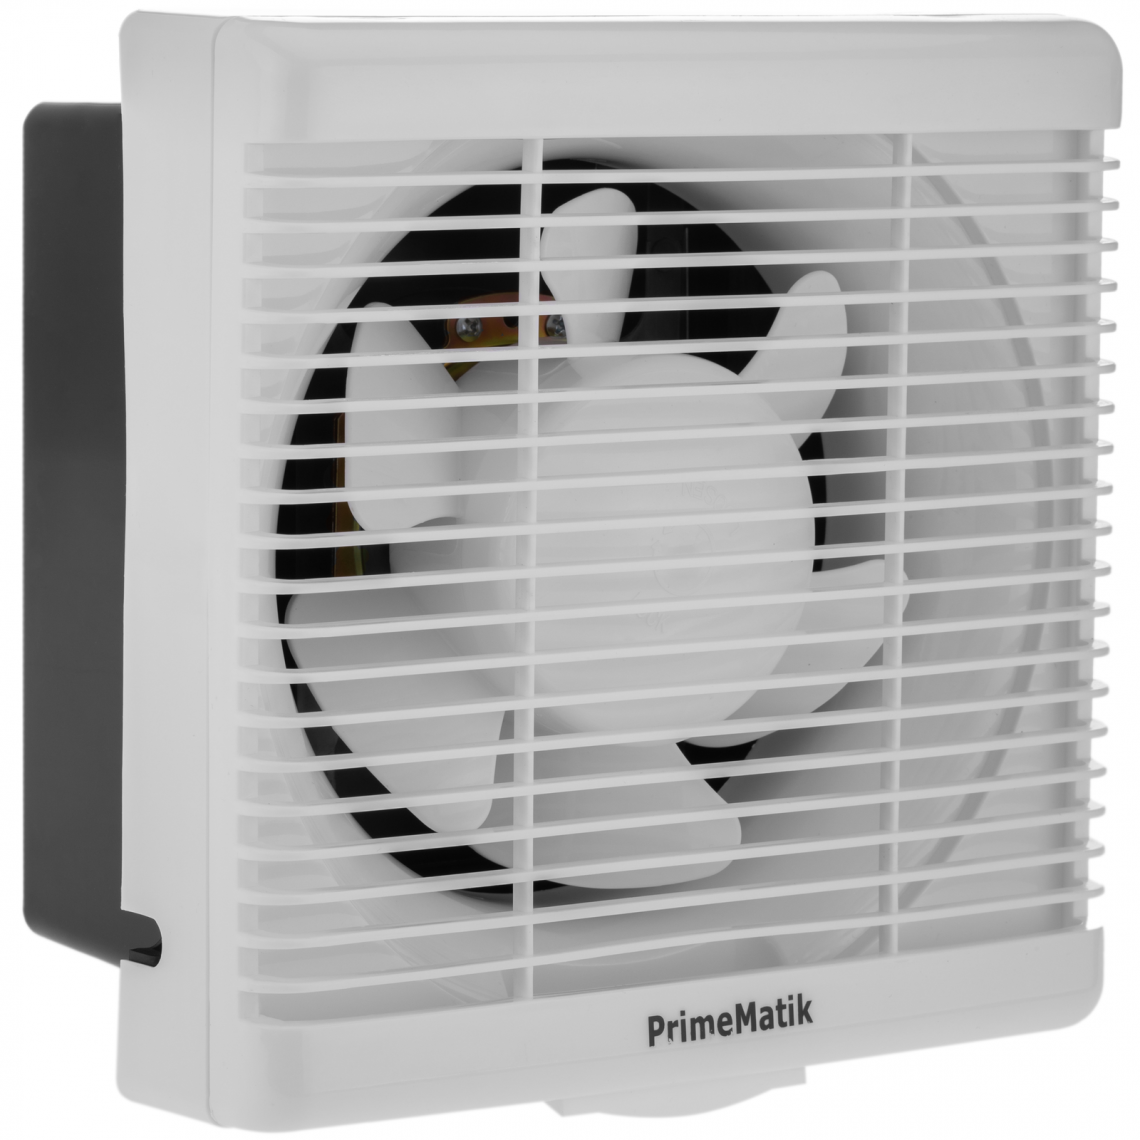 Primematik - Extracteur de ventilateur, Extracteur d’air 230x230 mm avec système anti-retour, pour toilette cuisine garage - Grille d'aération